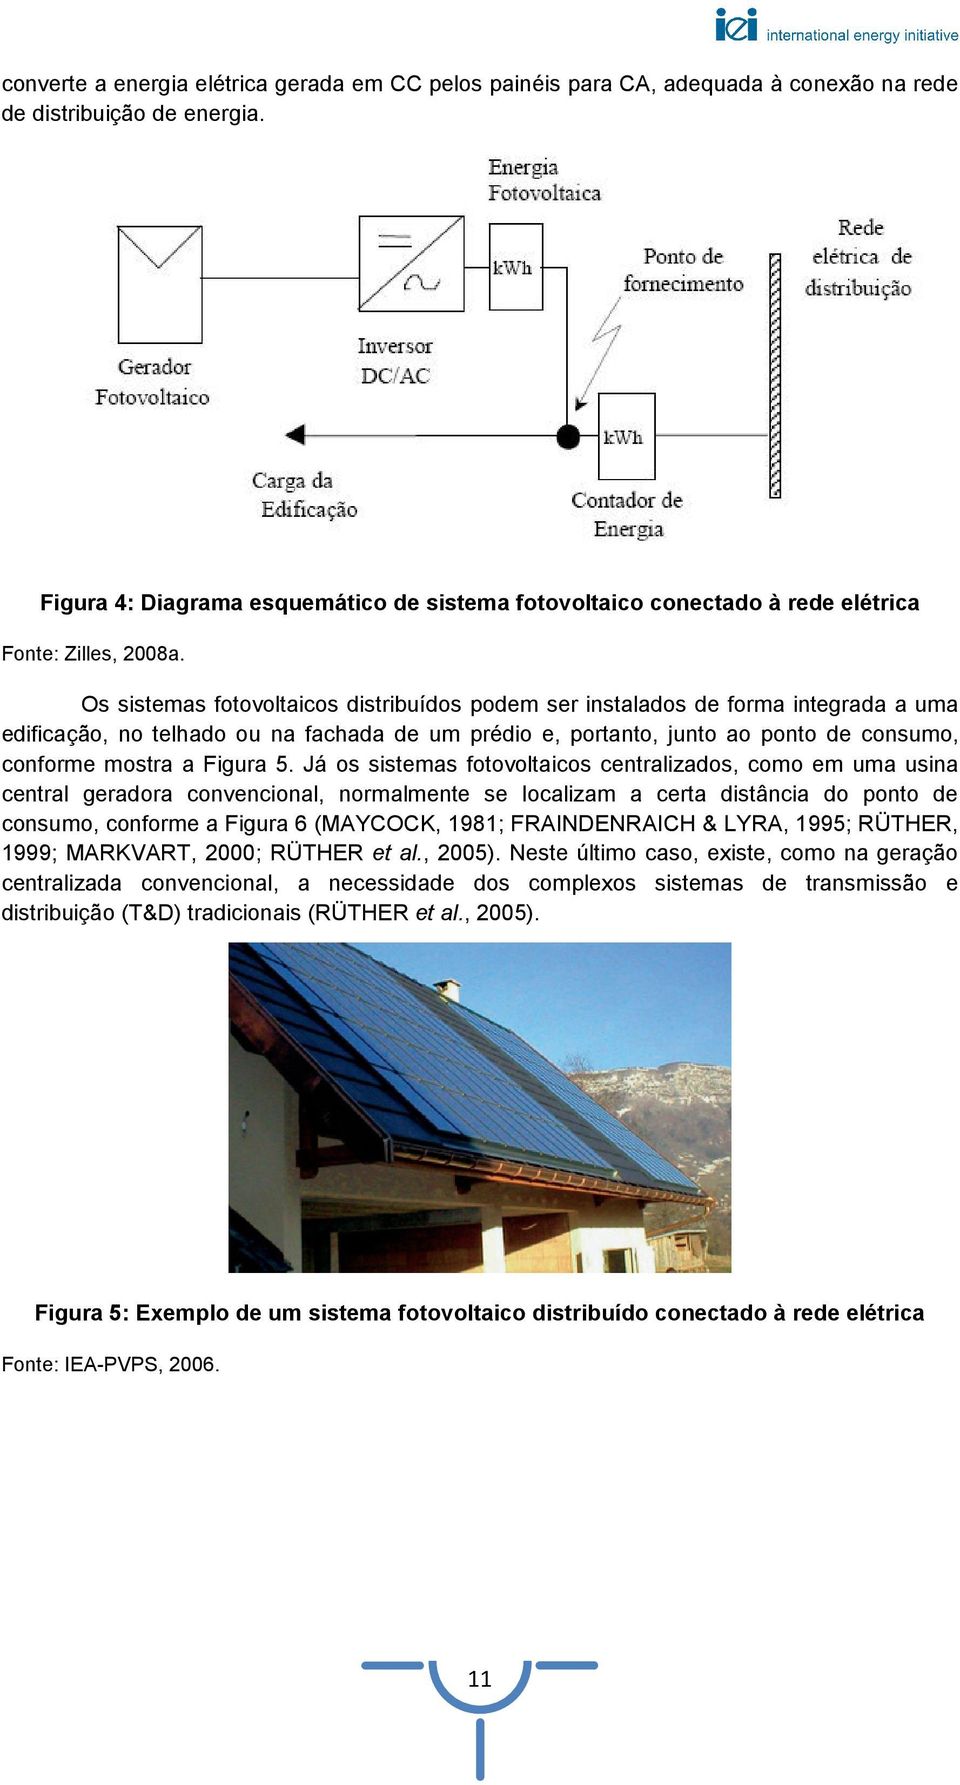 Os sistemas fotovoltaicos distribuídos podem ser instalados de forma integrada a uma edificação, no telhado ou na fachada de um prédio e, portanto, junto ao ponto de consumo, conforme mostra a Figura